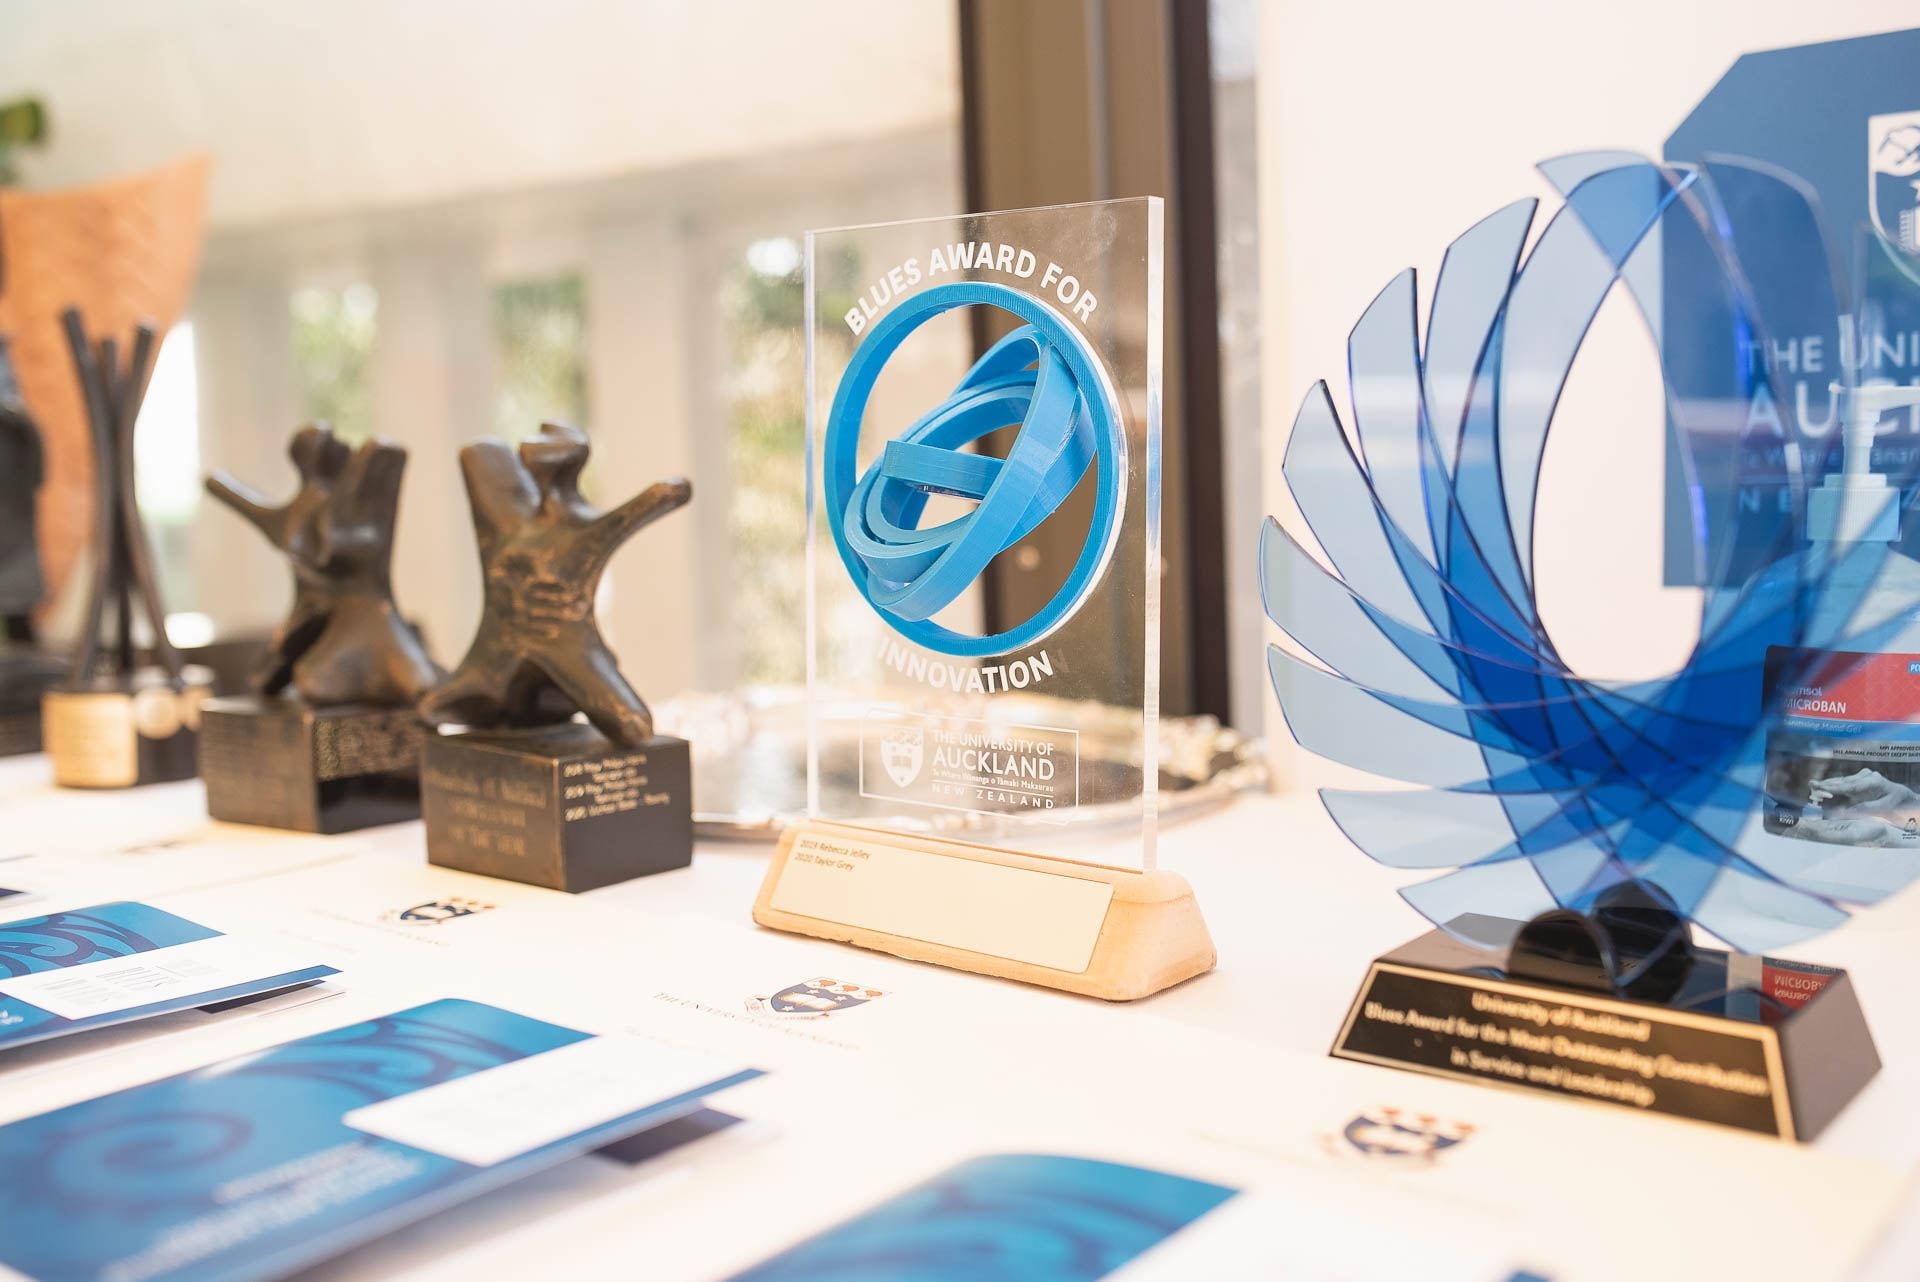 University of Auckland wins international award for entrepreneurship education